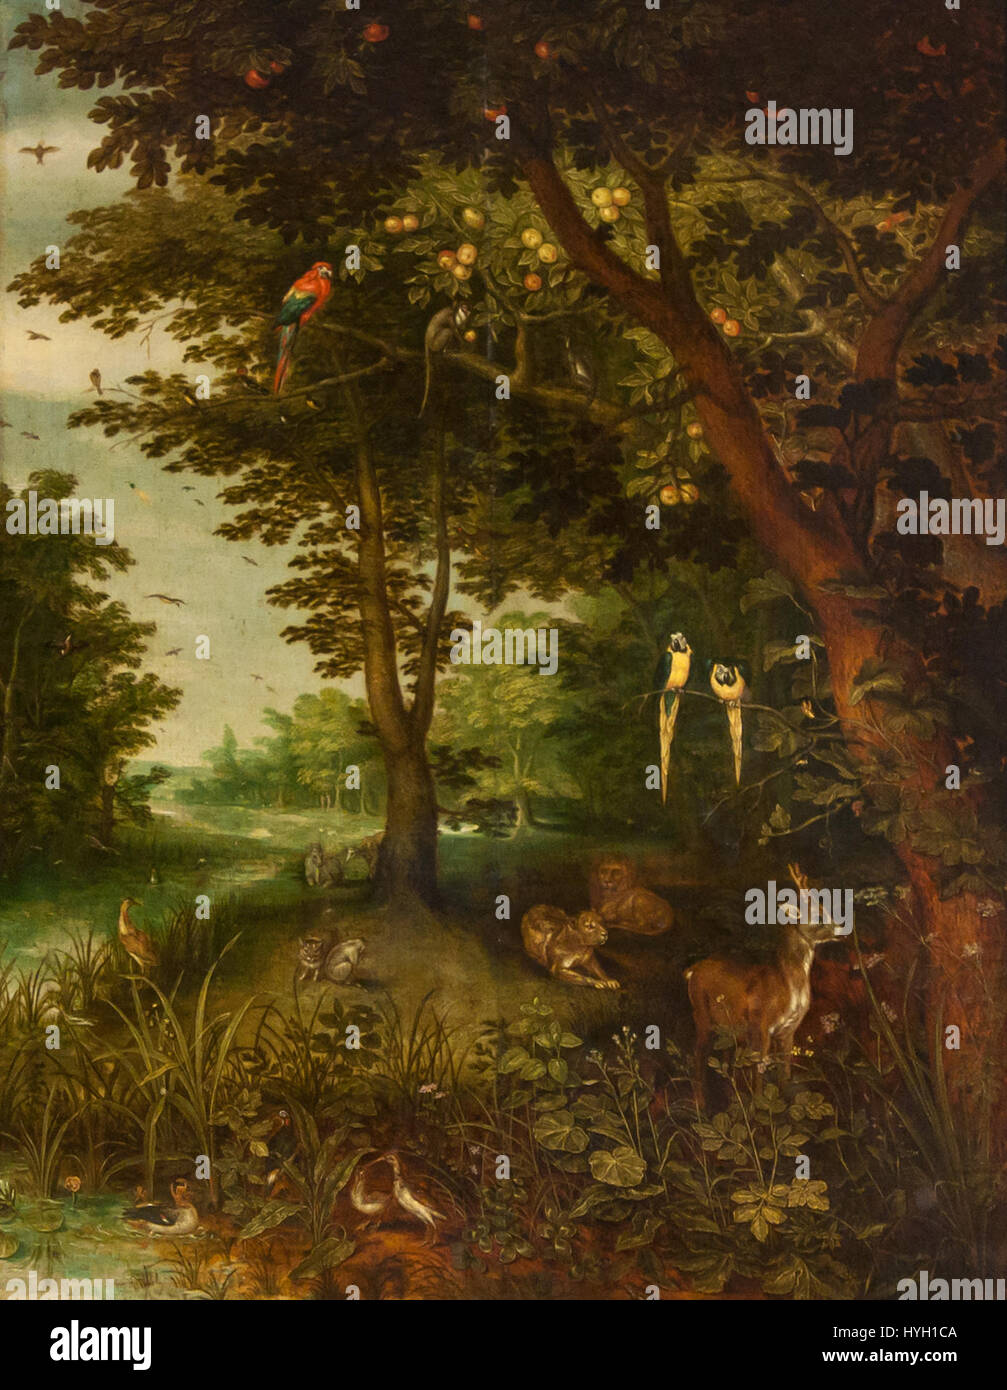 Jan Brueghel de Oude (1568 1625) Het paradijs met dieren (1620) Sevilla Bellas Artes 22 03 2011 11 08 00 Foto Stock